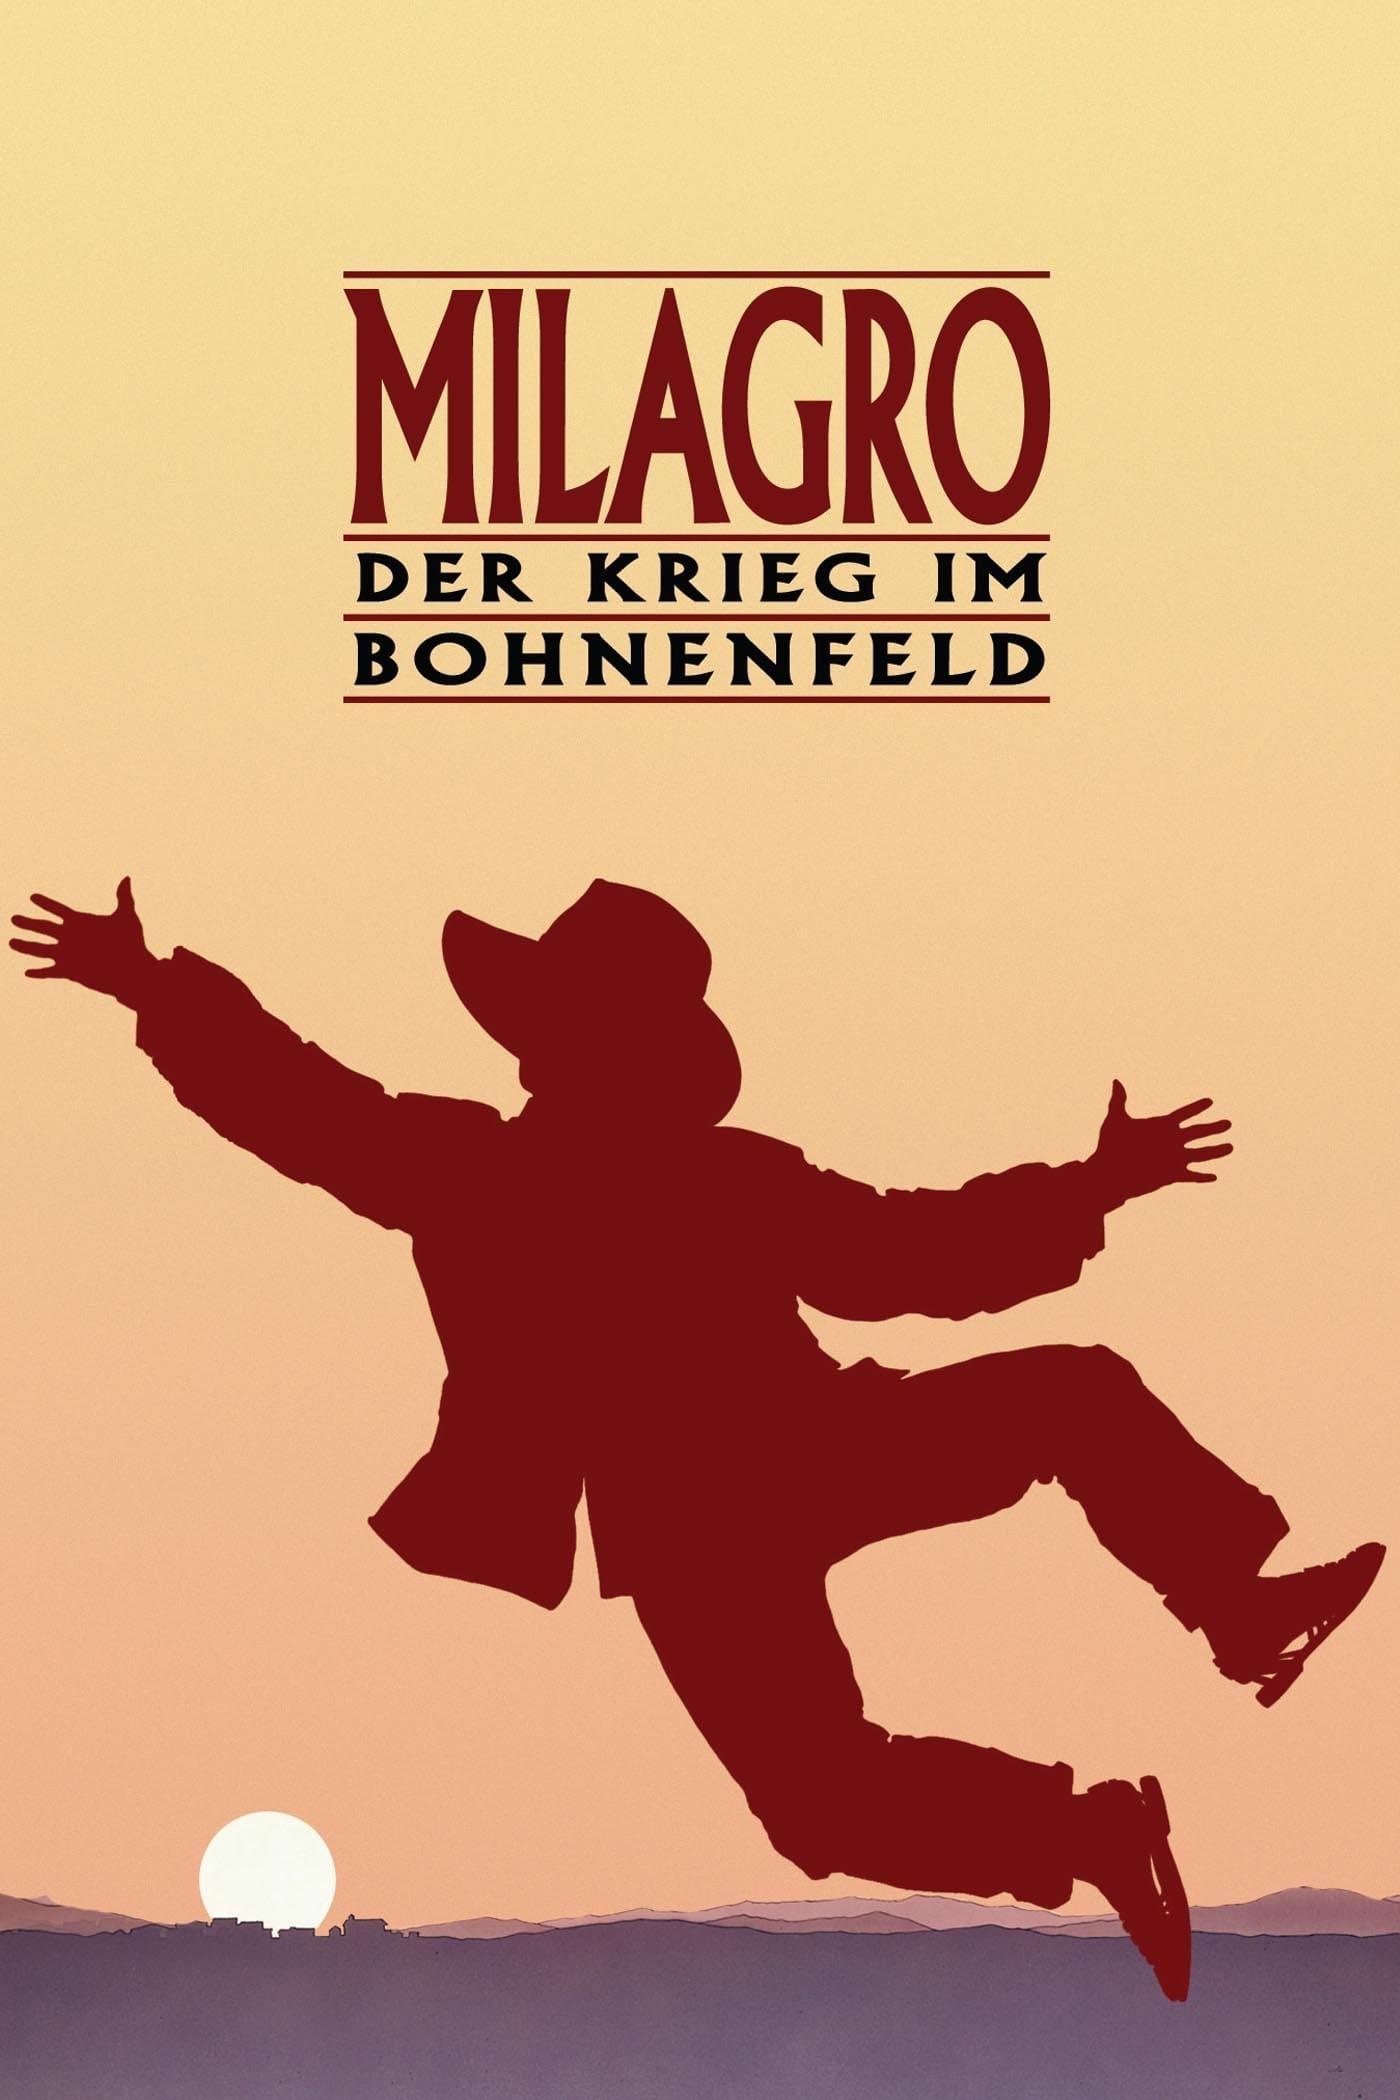 Milagro - Der Krieg im Bohnenfeld poster